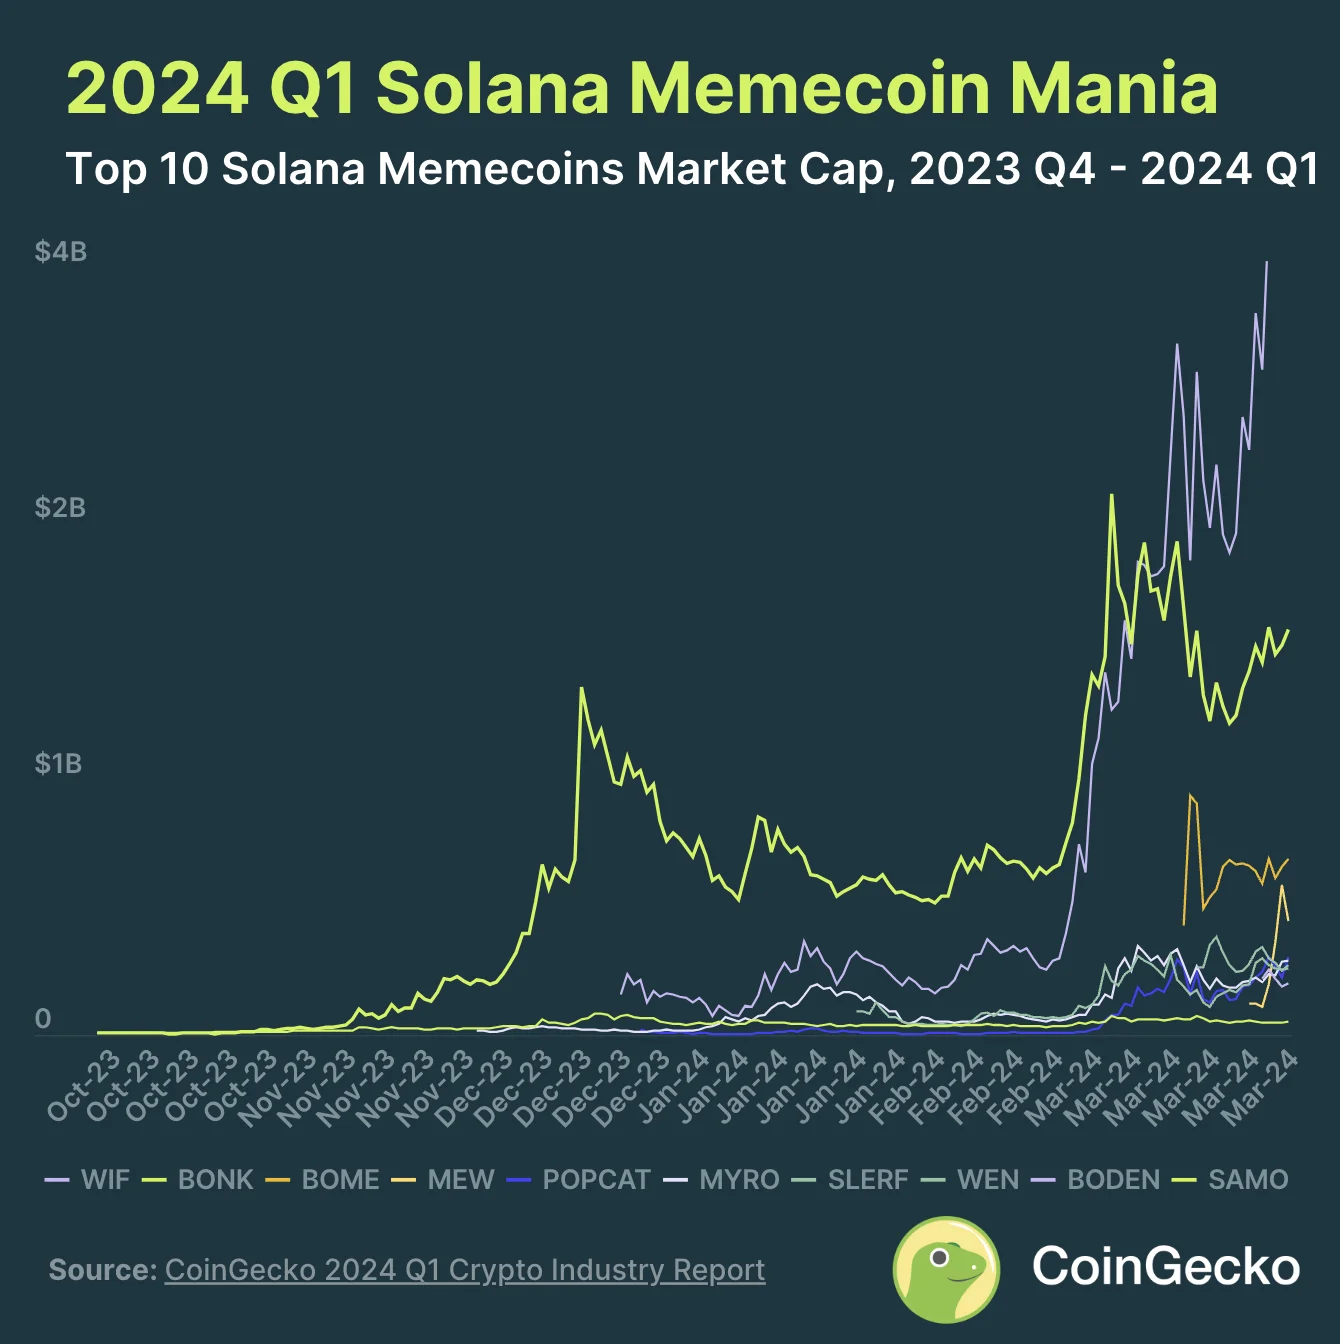 4. Solanas bāzes meme monētas sasniedza 8.32 miljardu dolāru tirgus maksimālo robežu